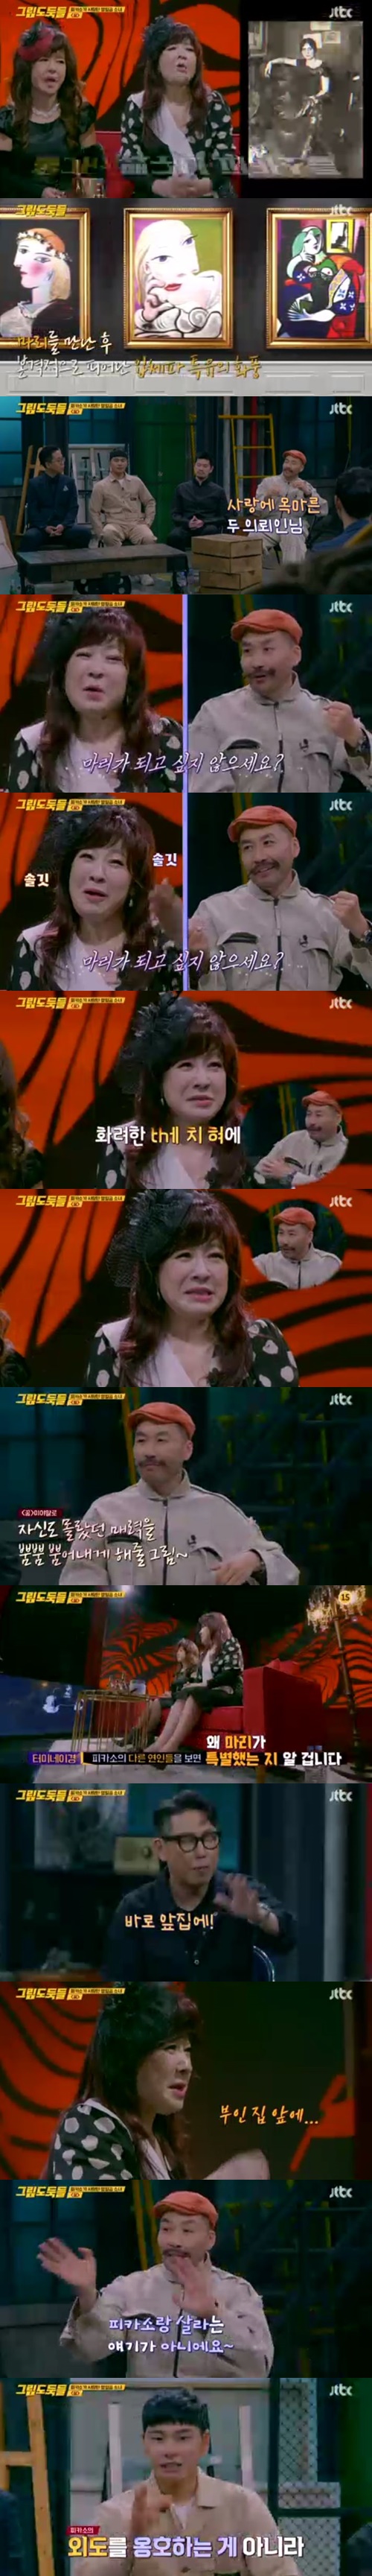 ‘그림도둑들’ 노사연 사진=JTBC 예능프로그램 ‘그림도둑들’ 캡처